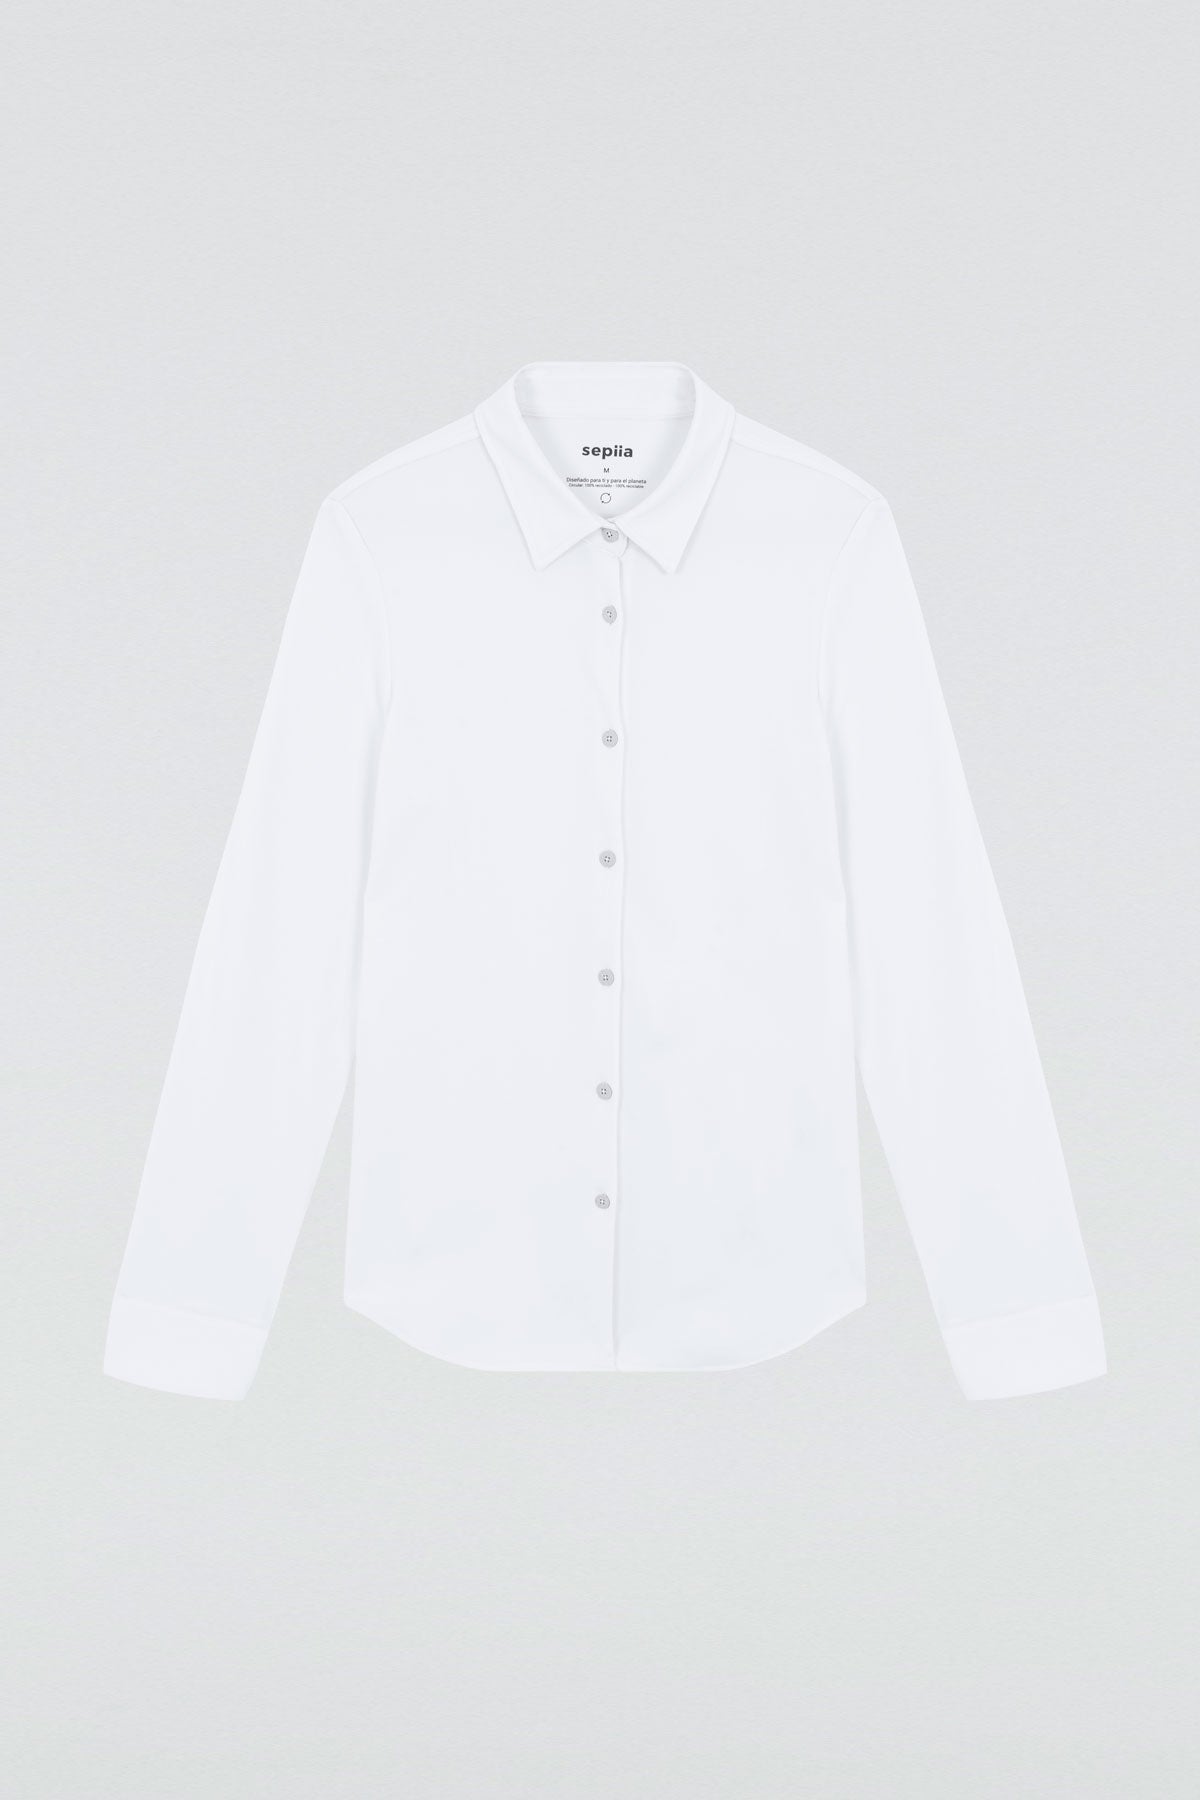 Camisa para mujer slim color blanco, básica y versátil. Foto plano